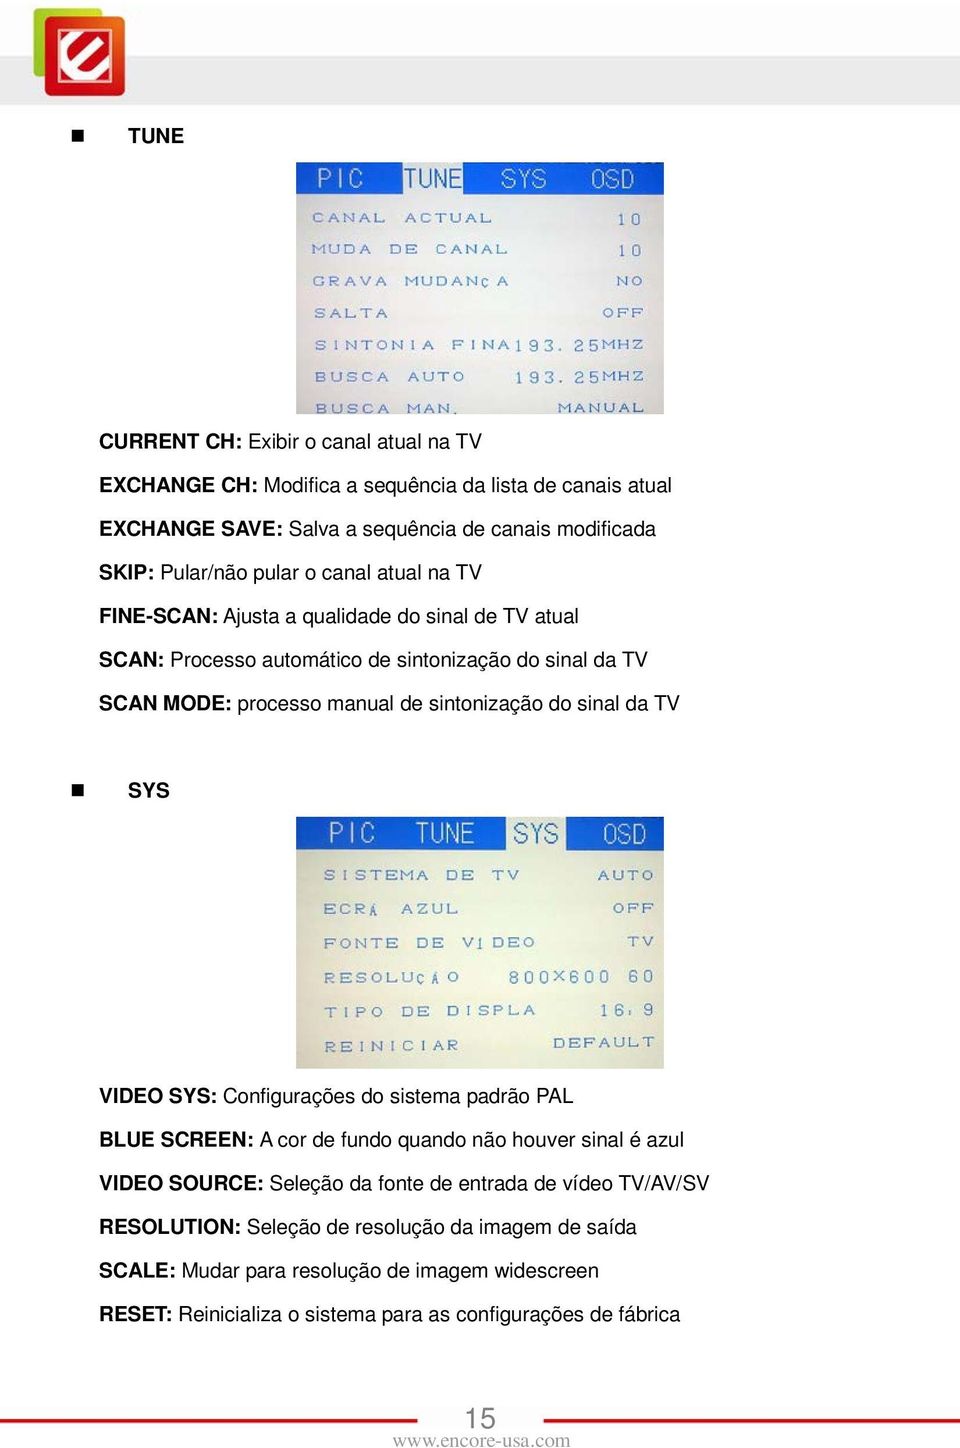 sintonização do sinal da TV SYS VIDEO SYS: Configurações do sistema padrão PAL BLUE SCREEN: A cor de fundo quando não houver sinal é azul VIDEO SOURCE: Seleção da fonte de